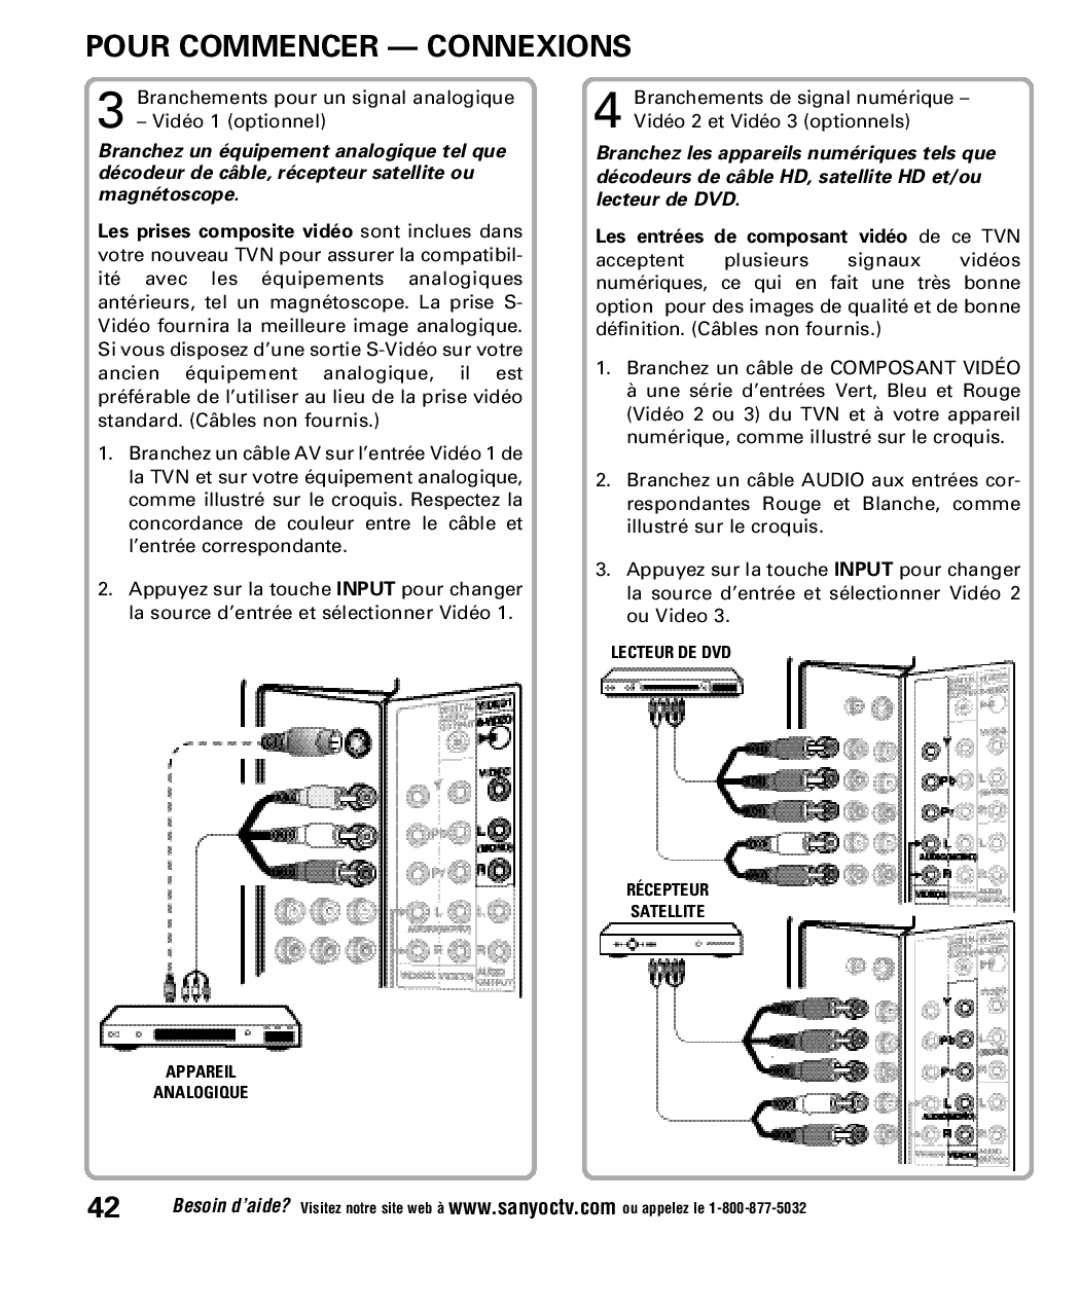 Sanyo DP52848 owner manual Pour Commencer Connexions, Les entrées de composant vidéo de ce TVN 